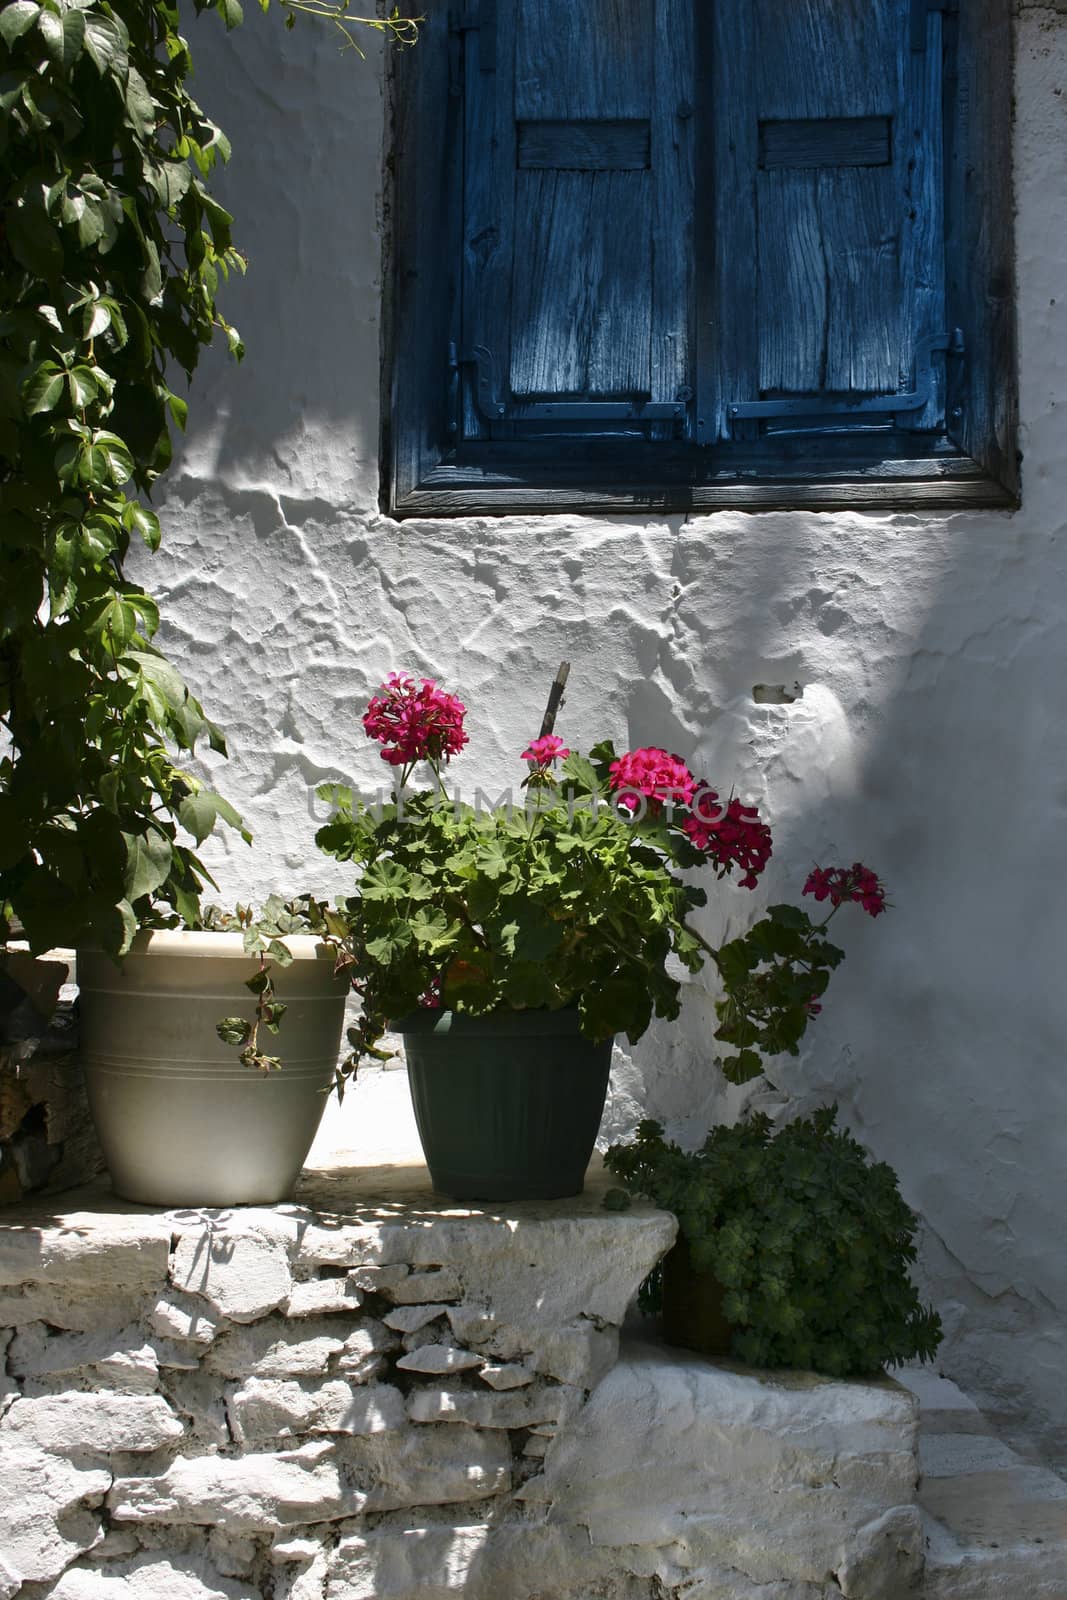 Greek window by anterovium